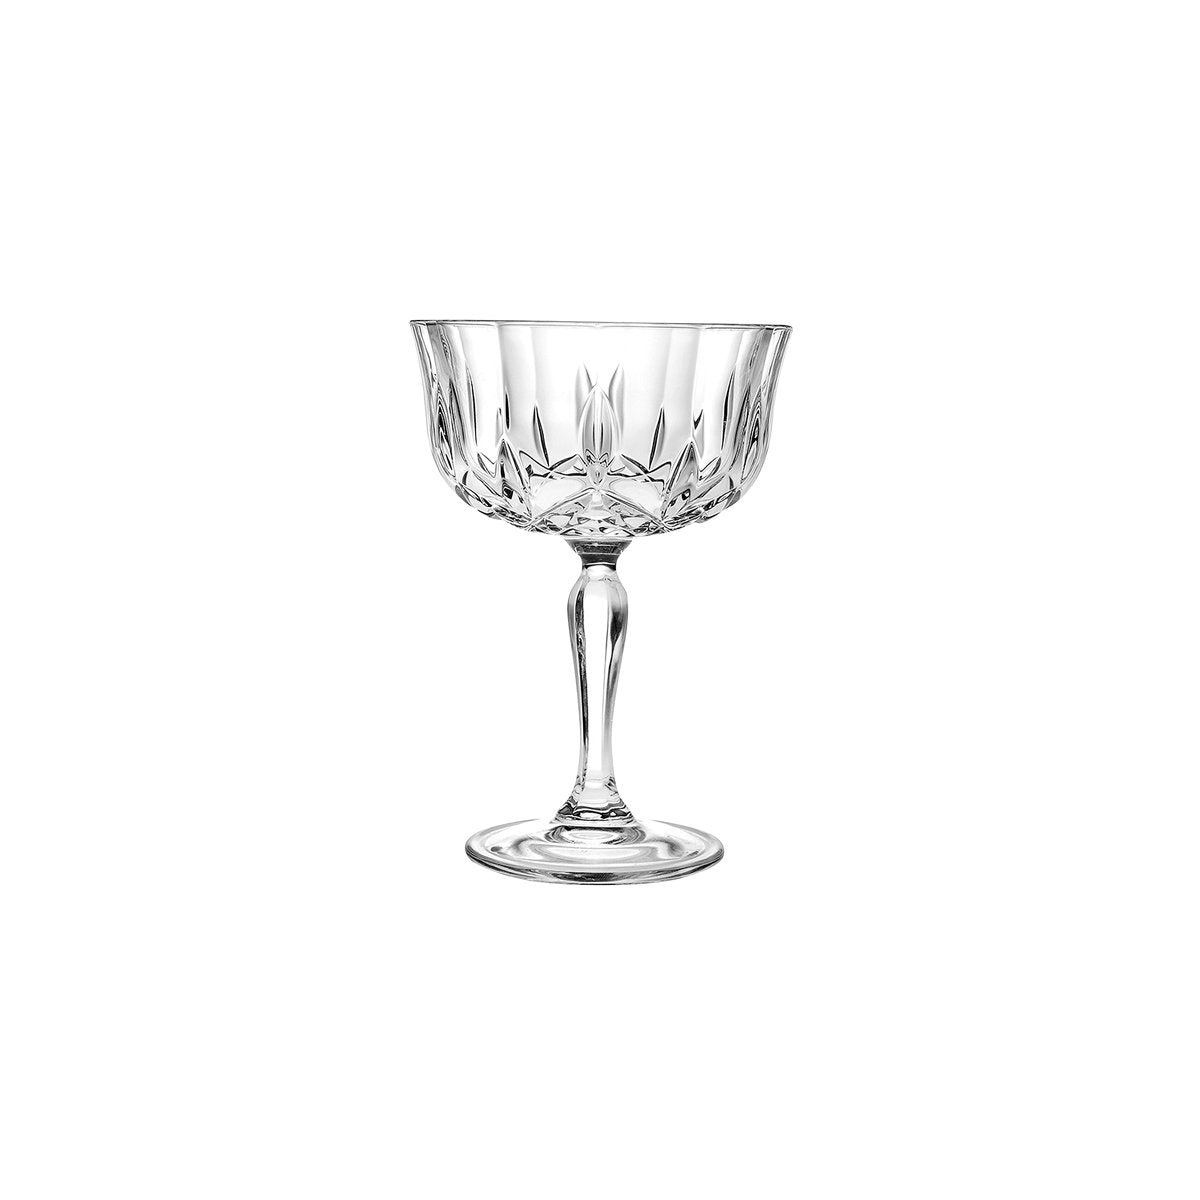 RCR363-550 RCR Cristalleria Opera Champagne Goblet 240ml Tomkin Australia Hospitality Supplies